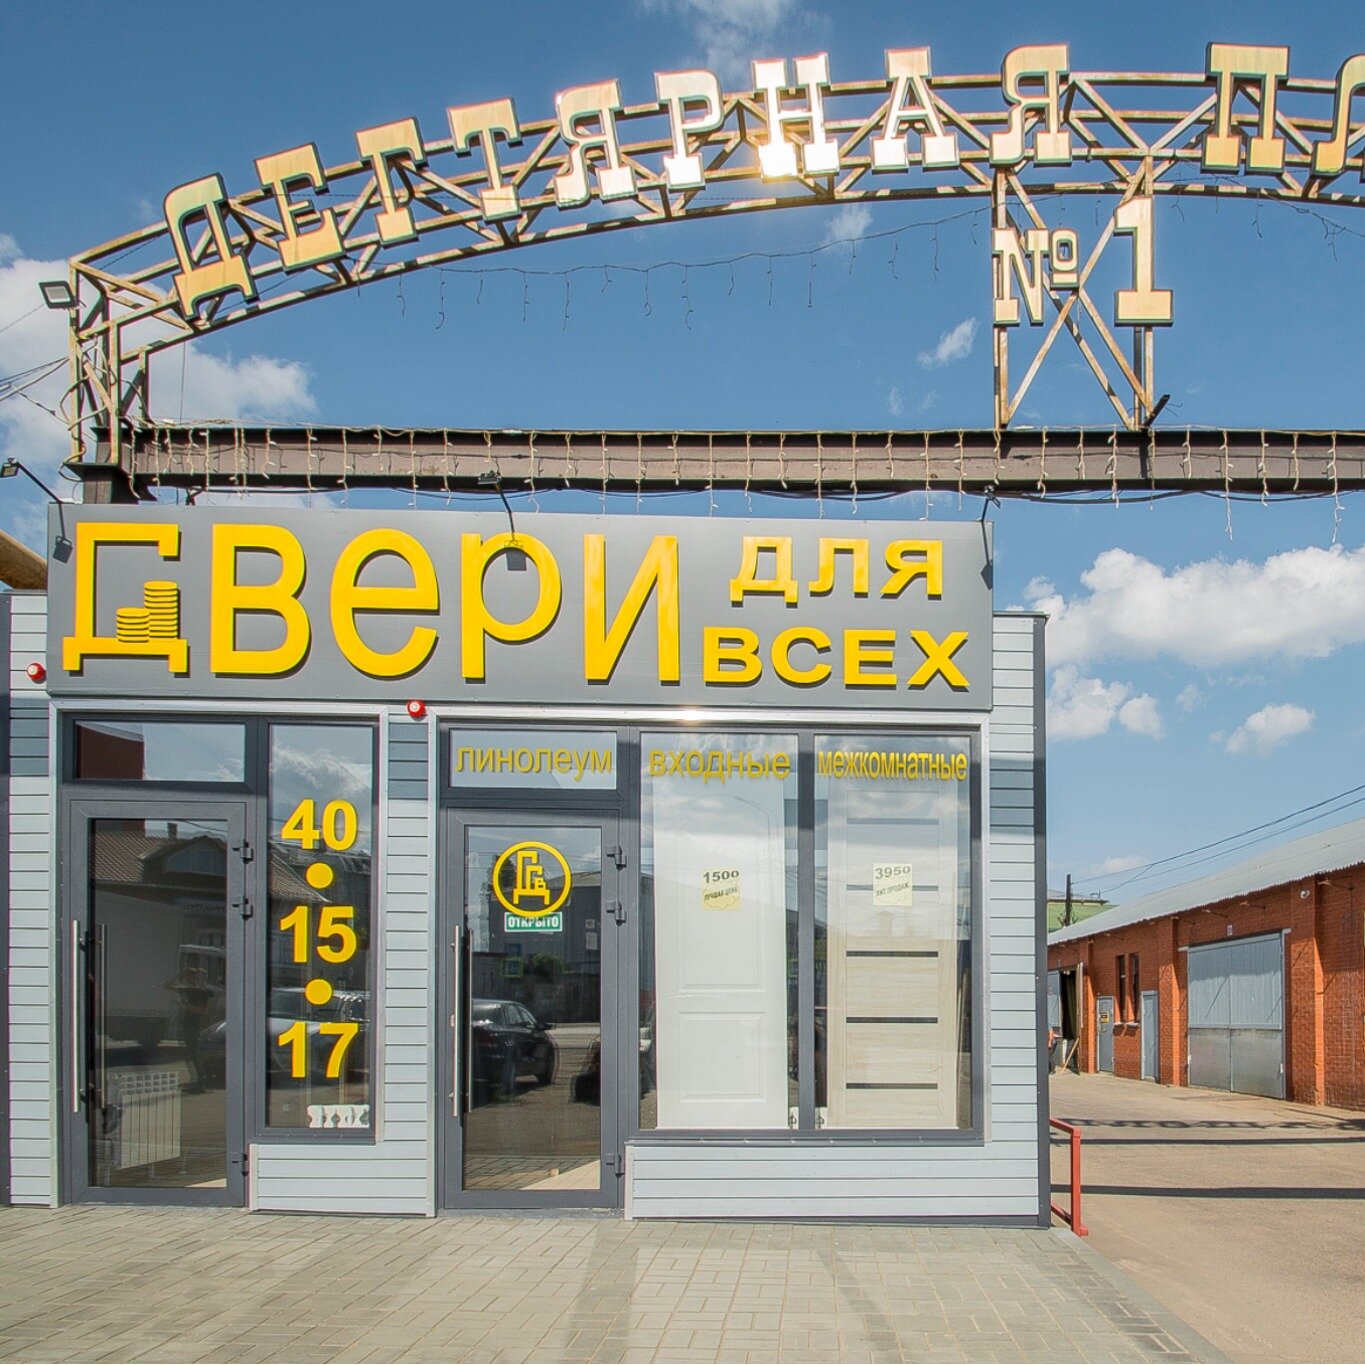 ДВЕРИ для всех - Ремонт и строительство, Установка дверей, Саратовская  область на Яндекс Услуги